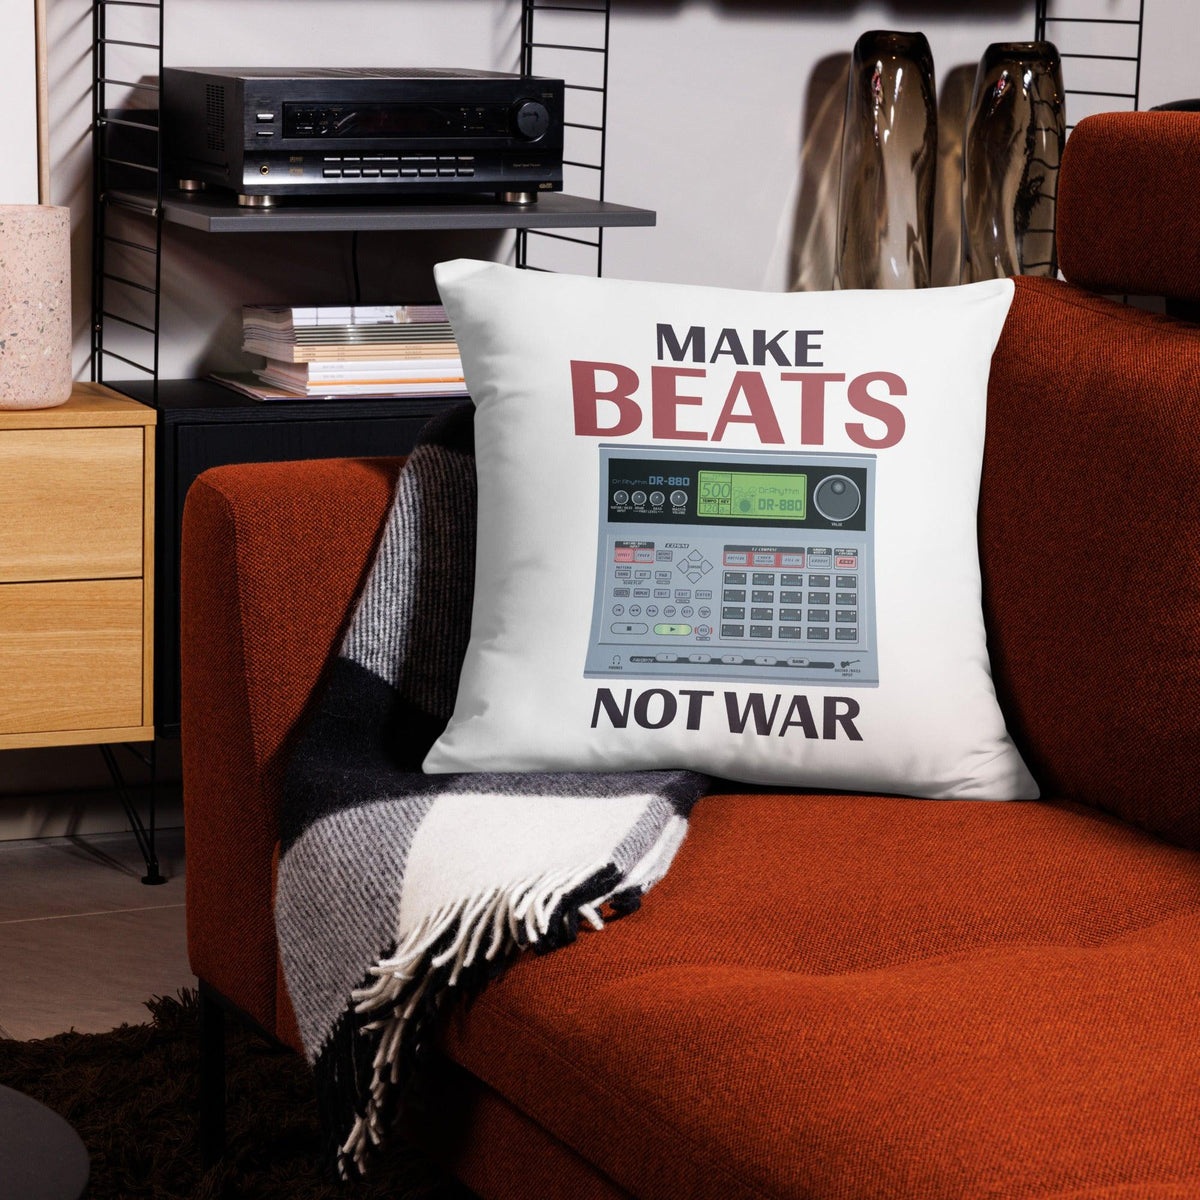 Boss Dr. Rhythm DR-880 Drum Machine Artist Rendition "Make Beats Not War Basic Pillow" - Tedeschi Studio, LLC.